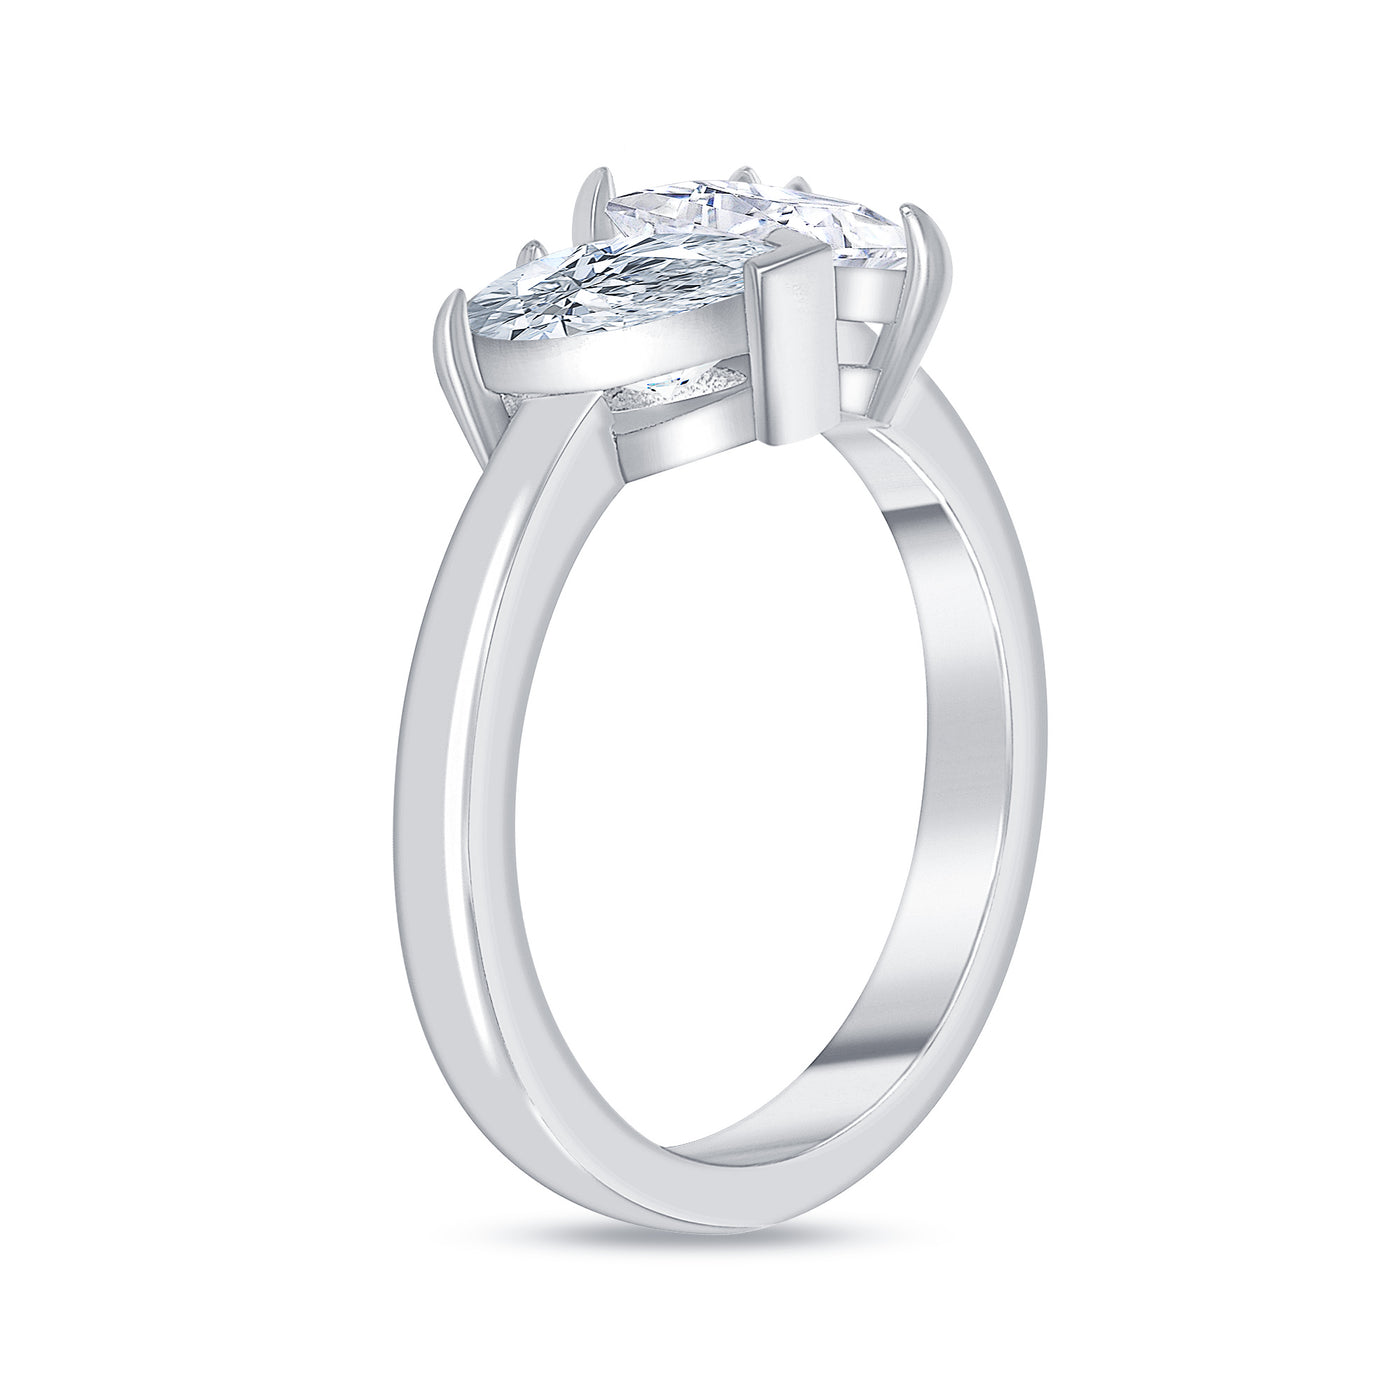 Toi et Moi Asscher and Pear Cut Diamond Engagement Ring 1.00 Carat